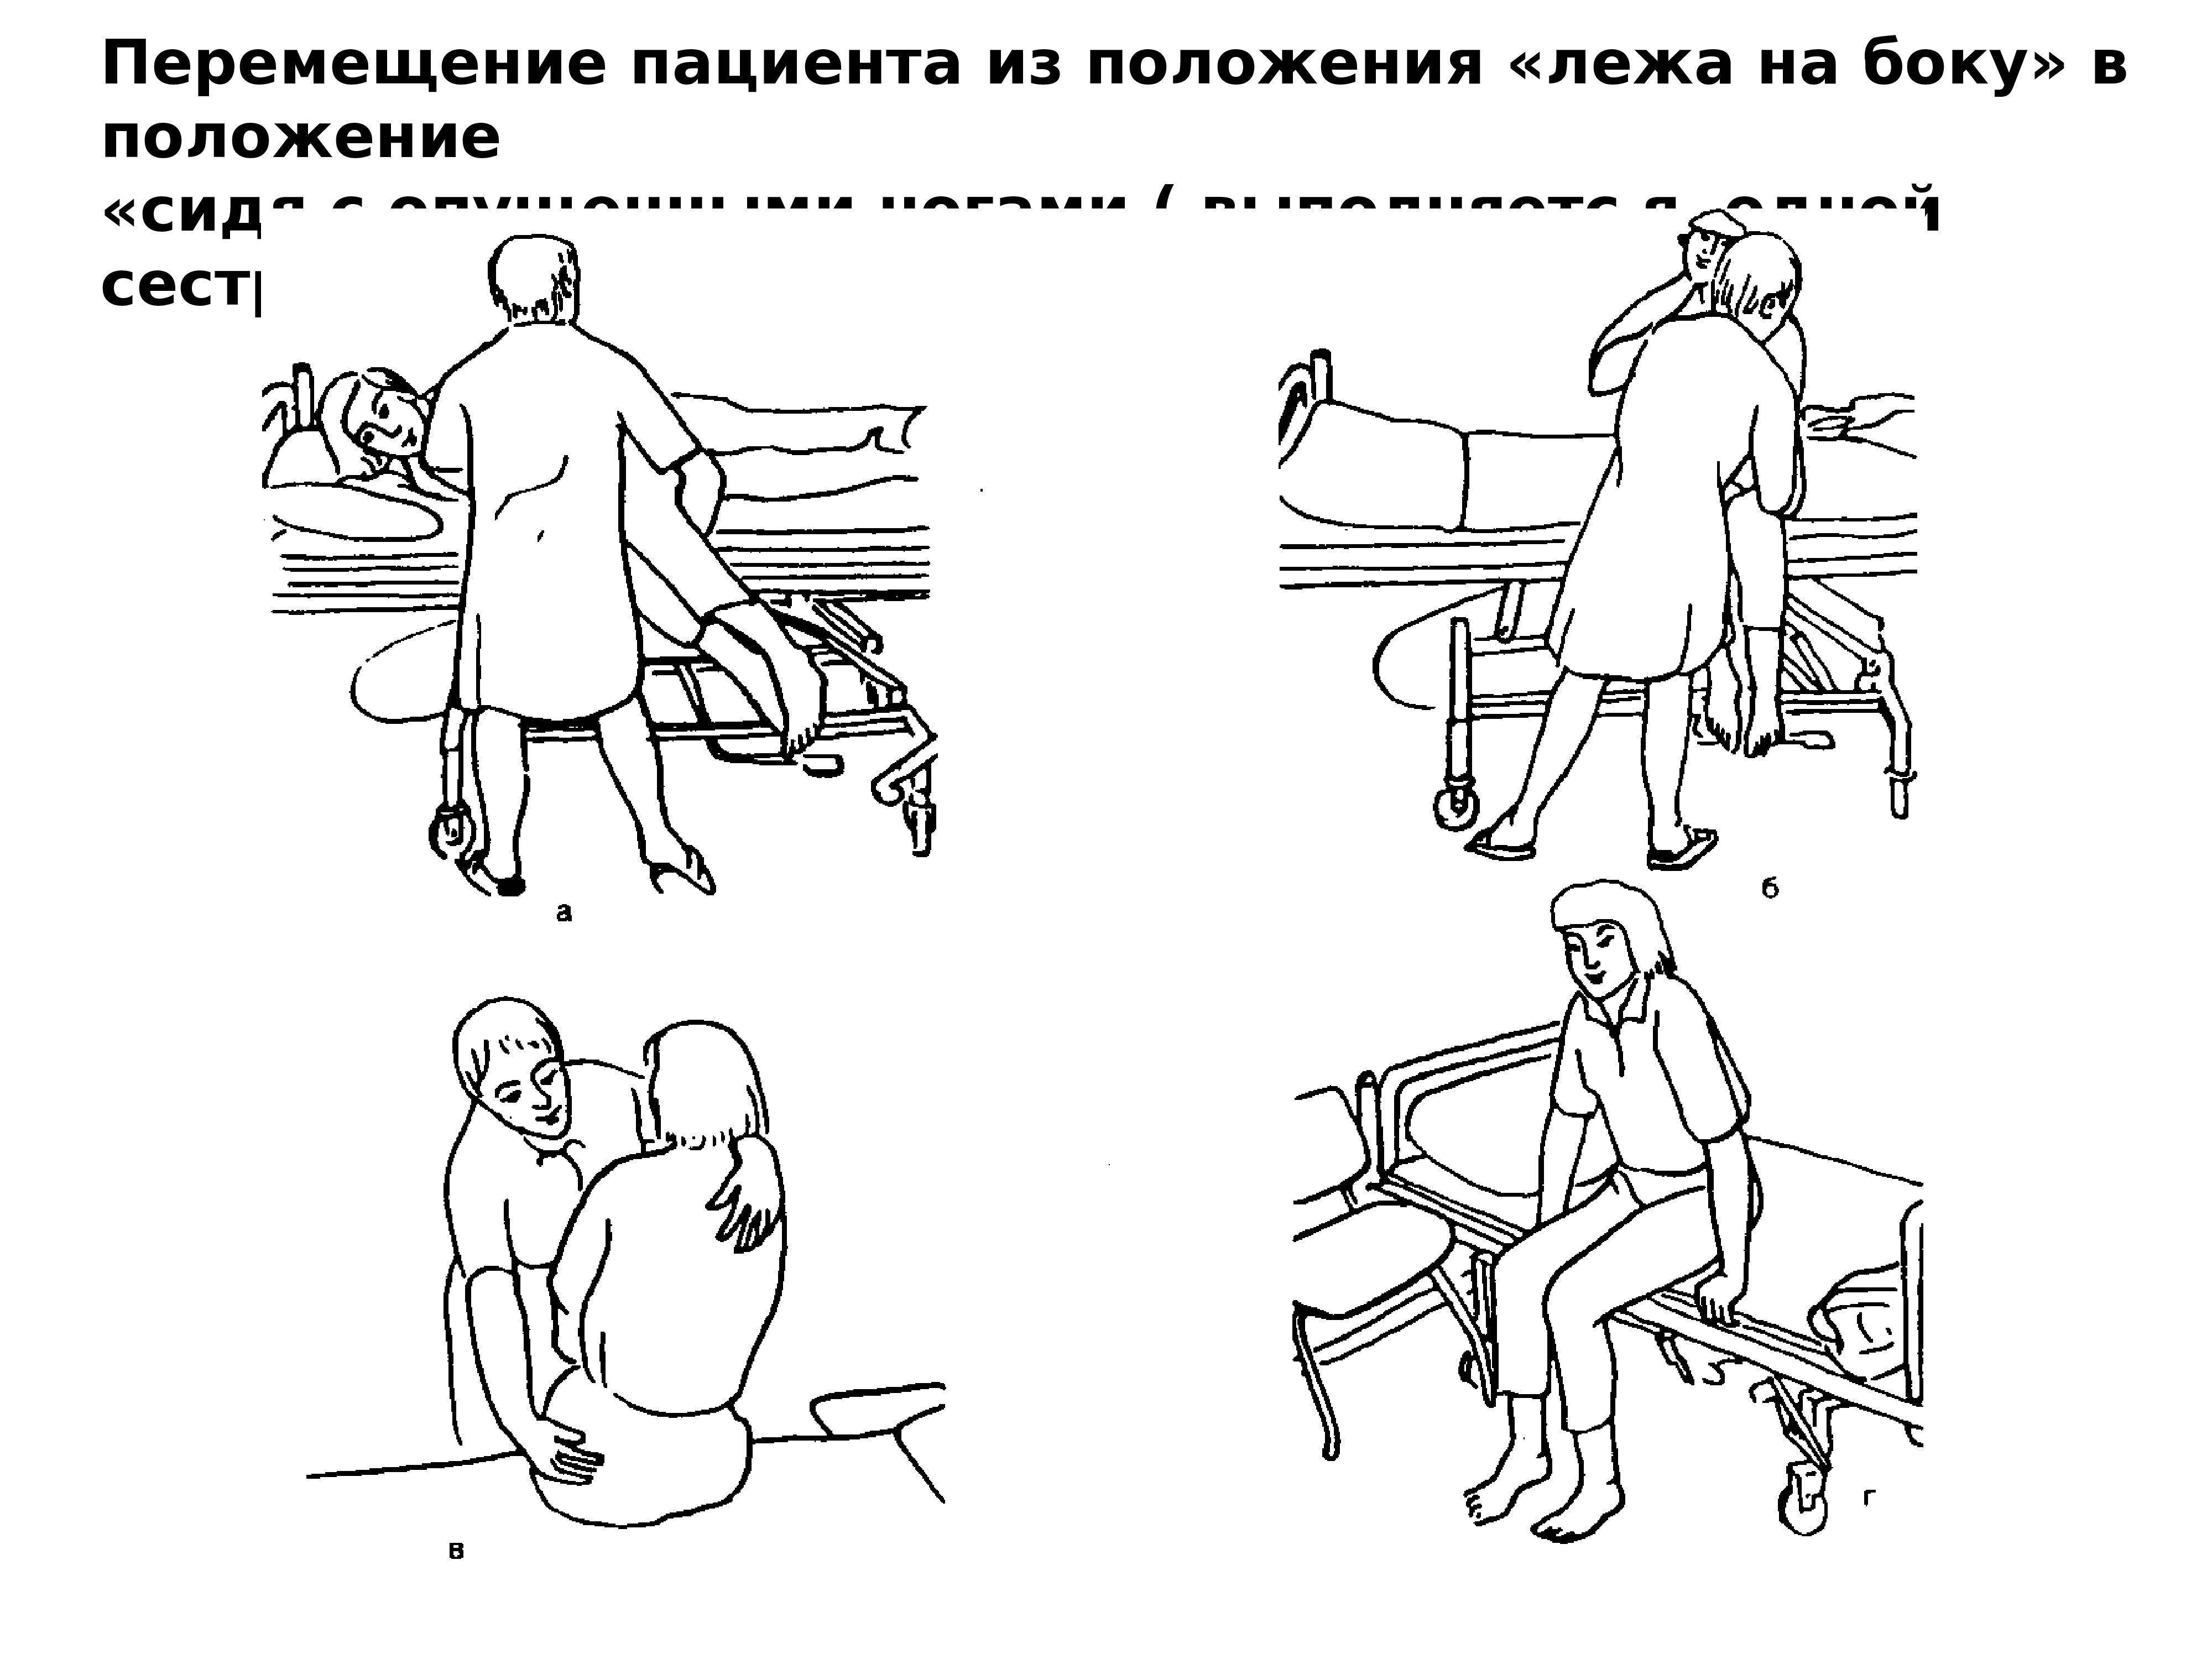 Перемещение пациента из кресла каталки на кровать